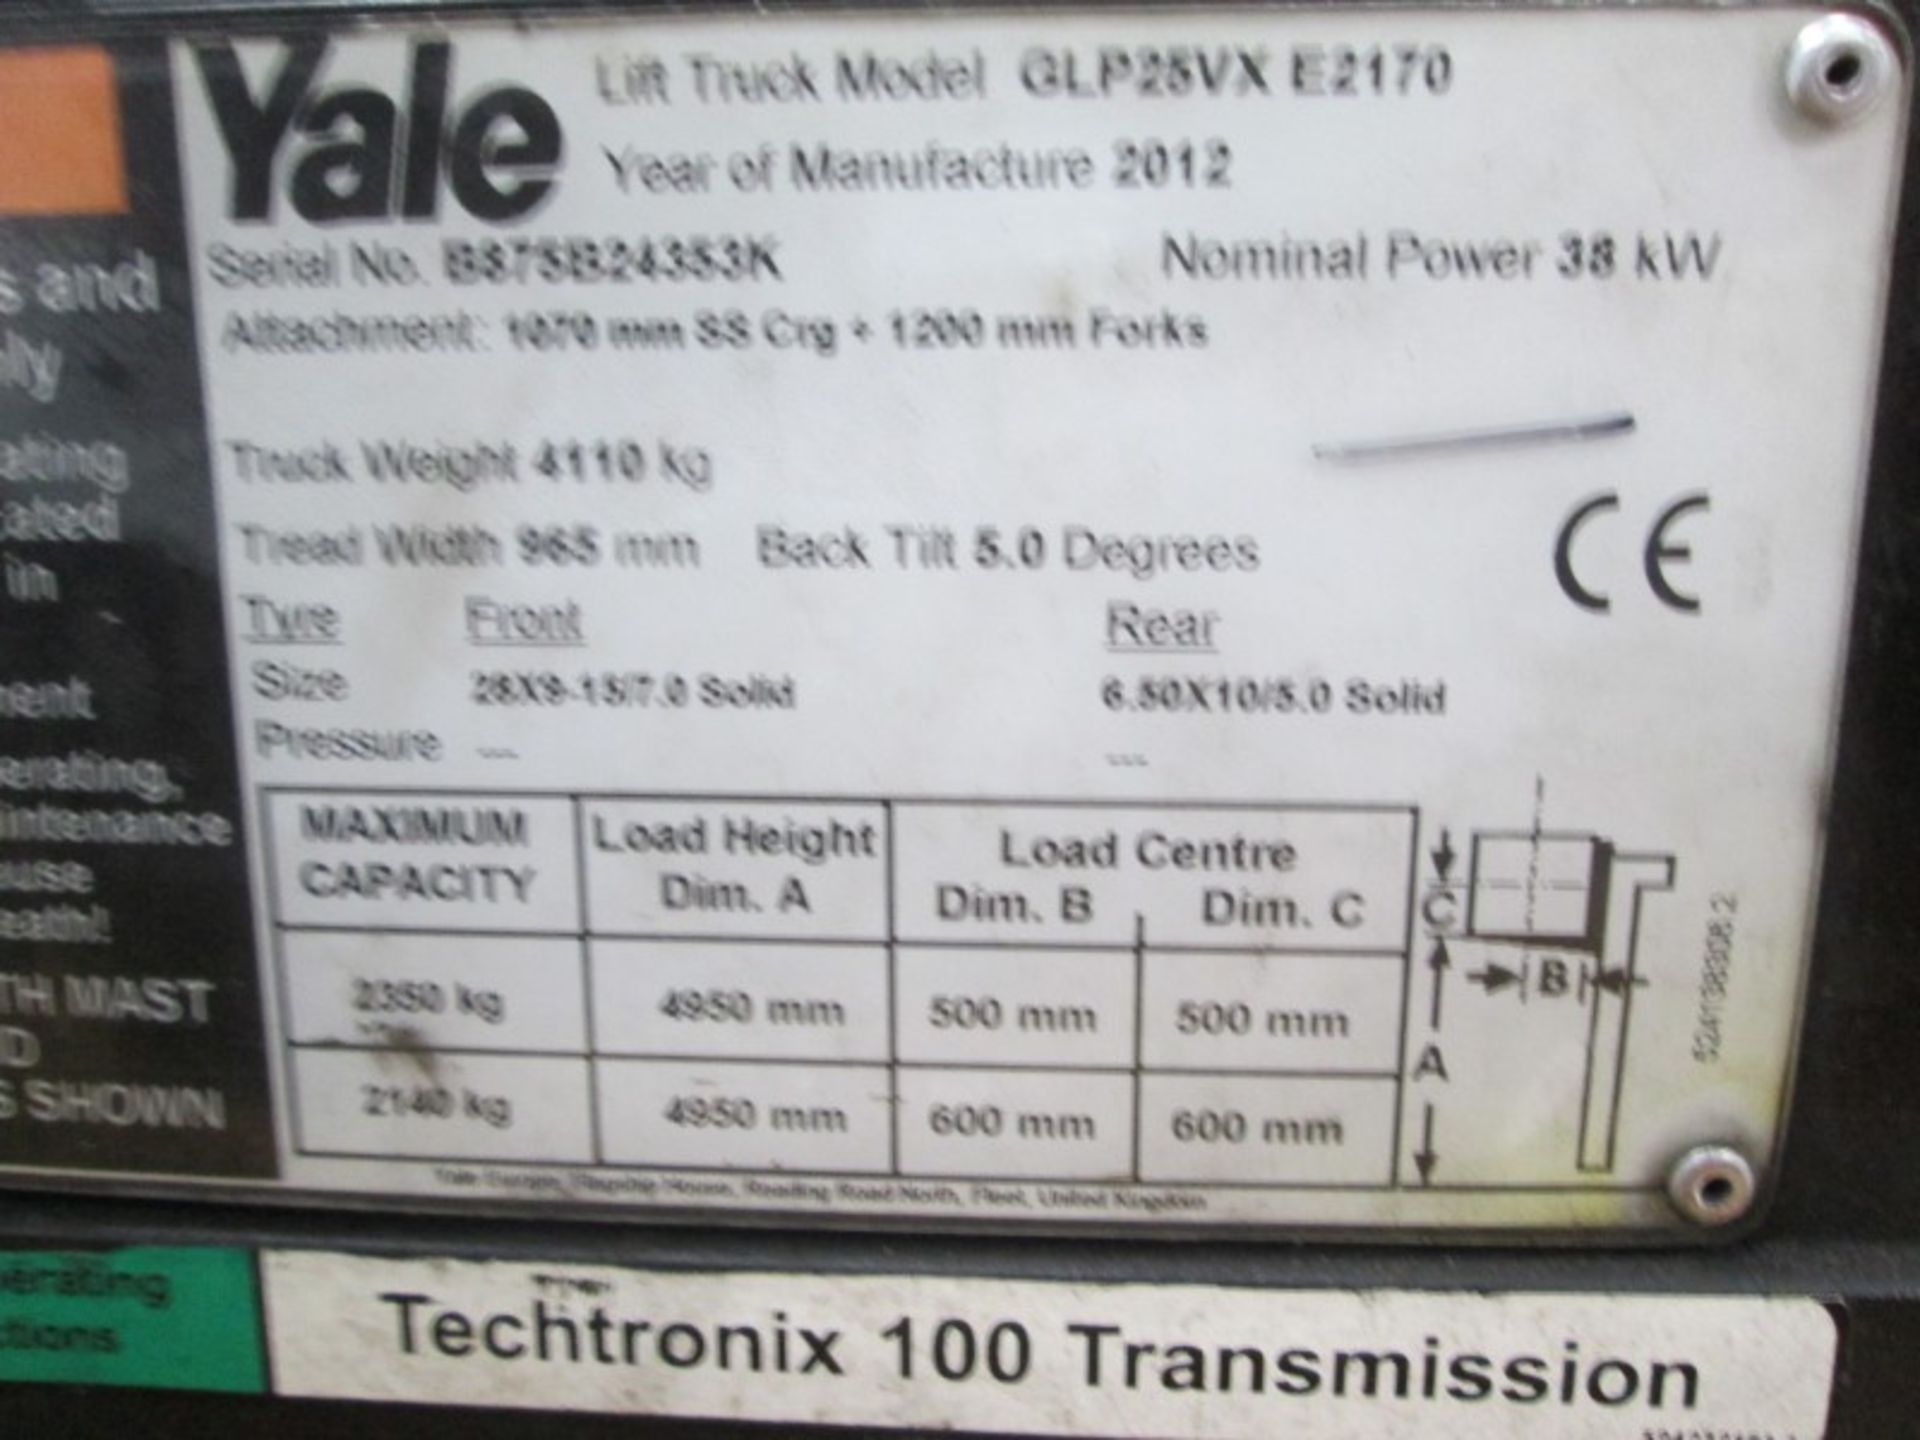 YALE GLP25VX E2170 Plant LPG / CNG - VIN: B875B24353K - Year: 2012 - no display km - Triplex 4.9M - Bild 8 aus 8